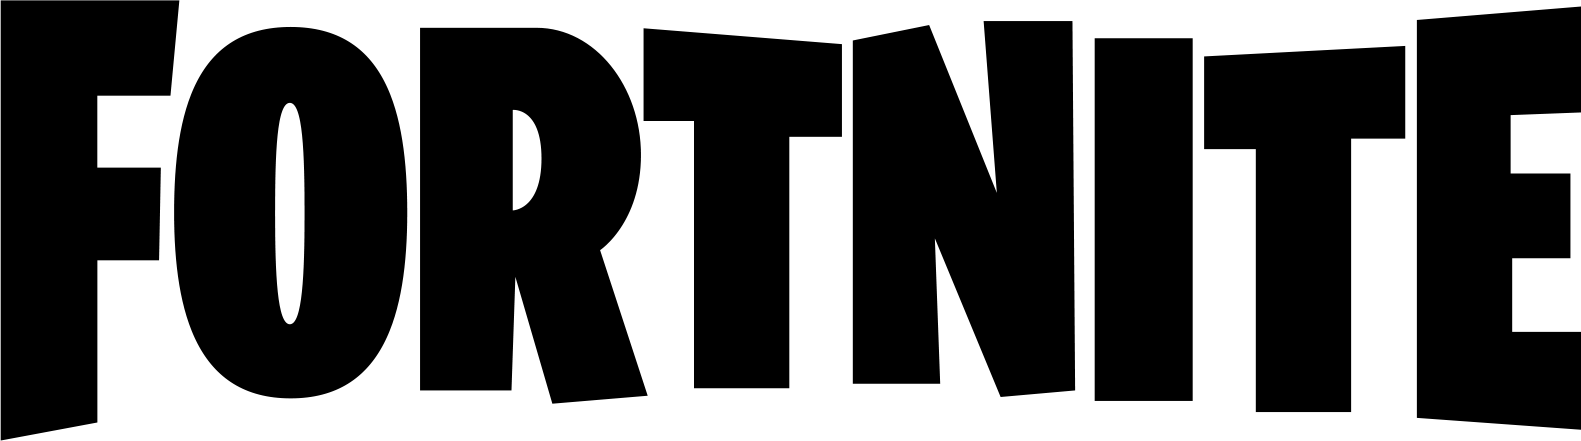 New Fortnite Battle Royale Logo - Fortnite battle royale logo png 1 » PNG Image